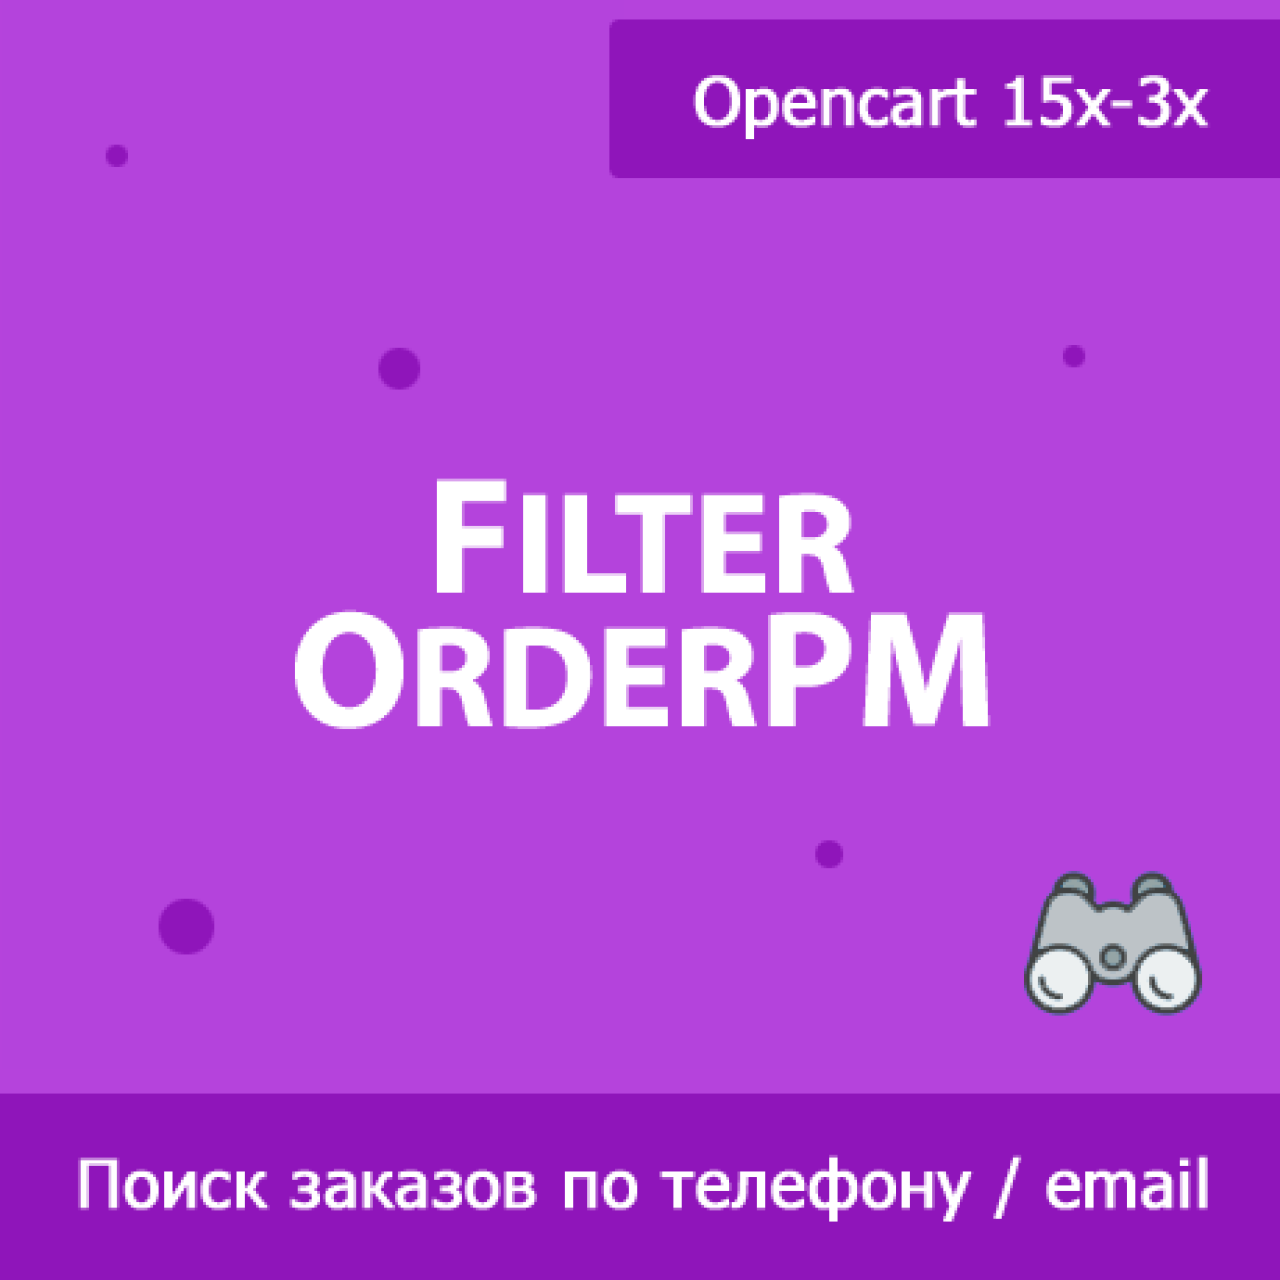 FilterOrderPM - поиск заказов по телефону и email покупателя из категории Админка для CMS OpenCart (ОпенКарт)